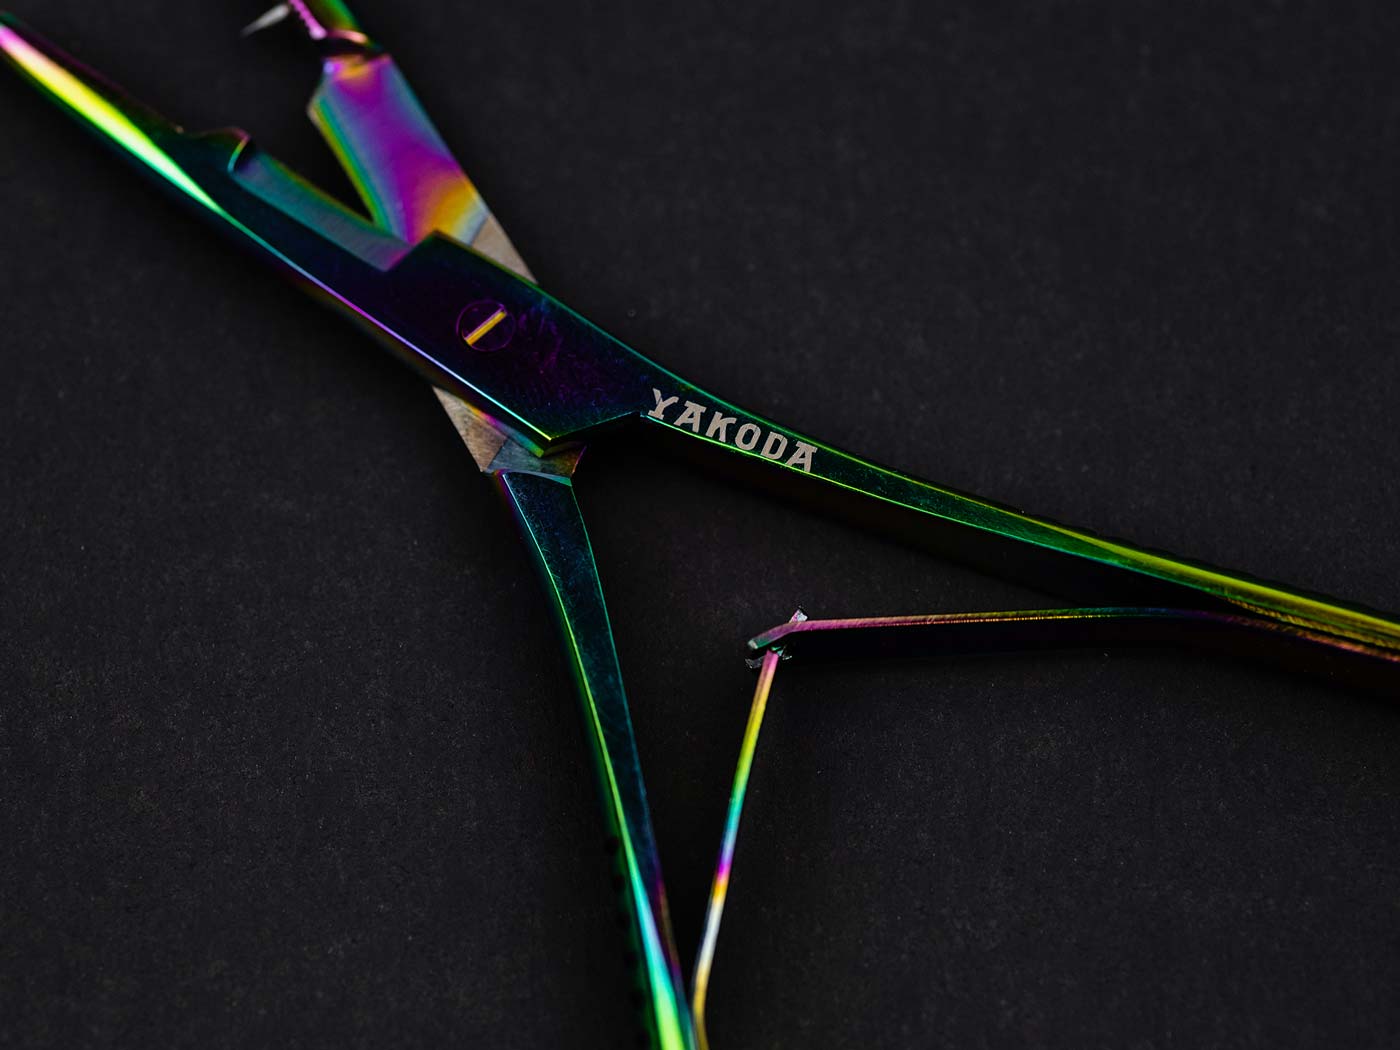 Titanium-Finished Scissor Clamp Forceps